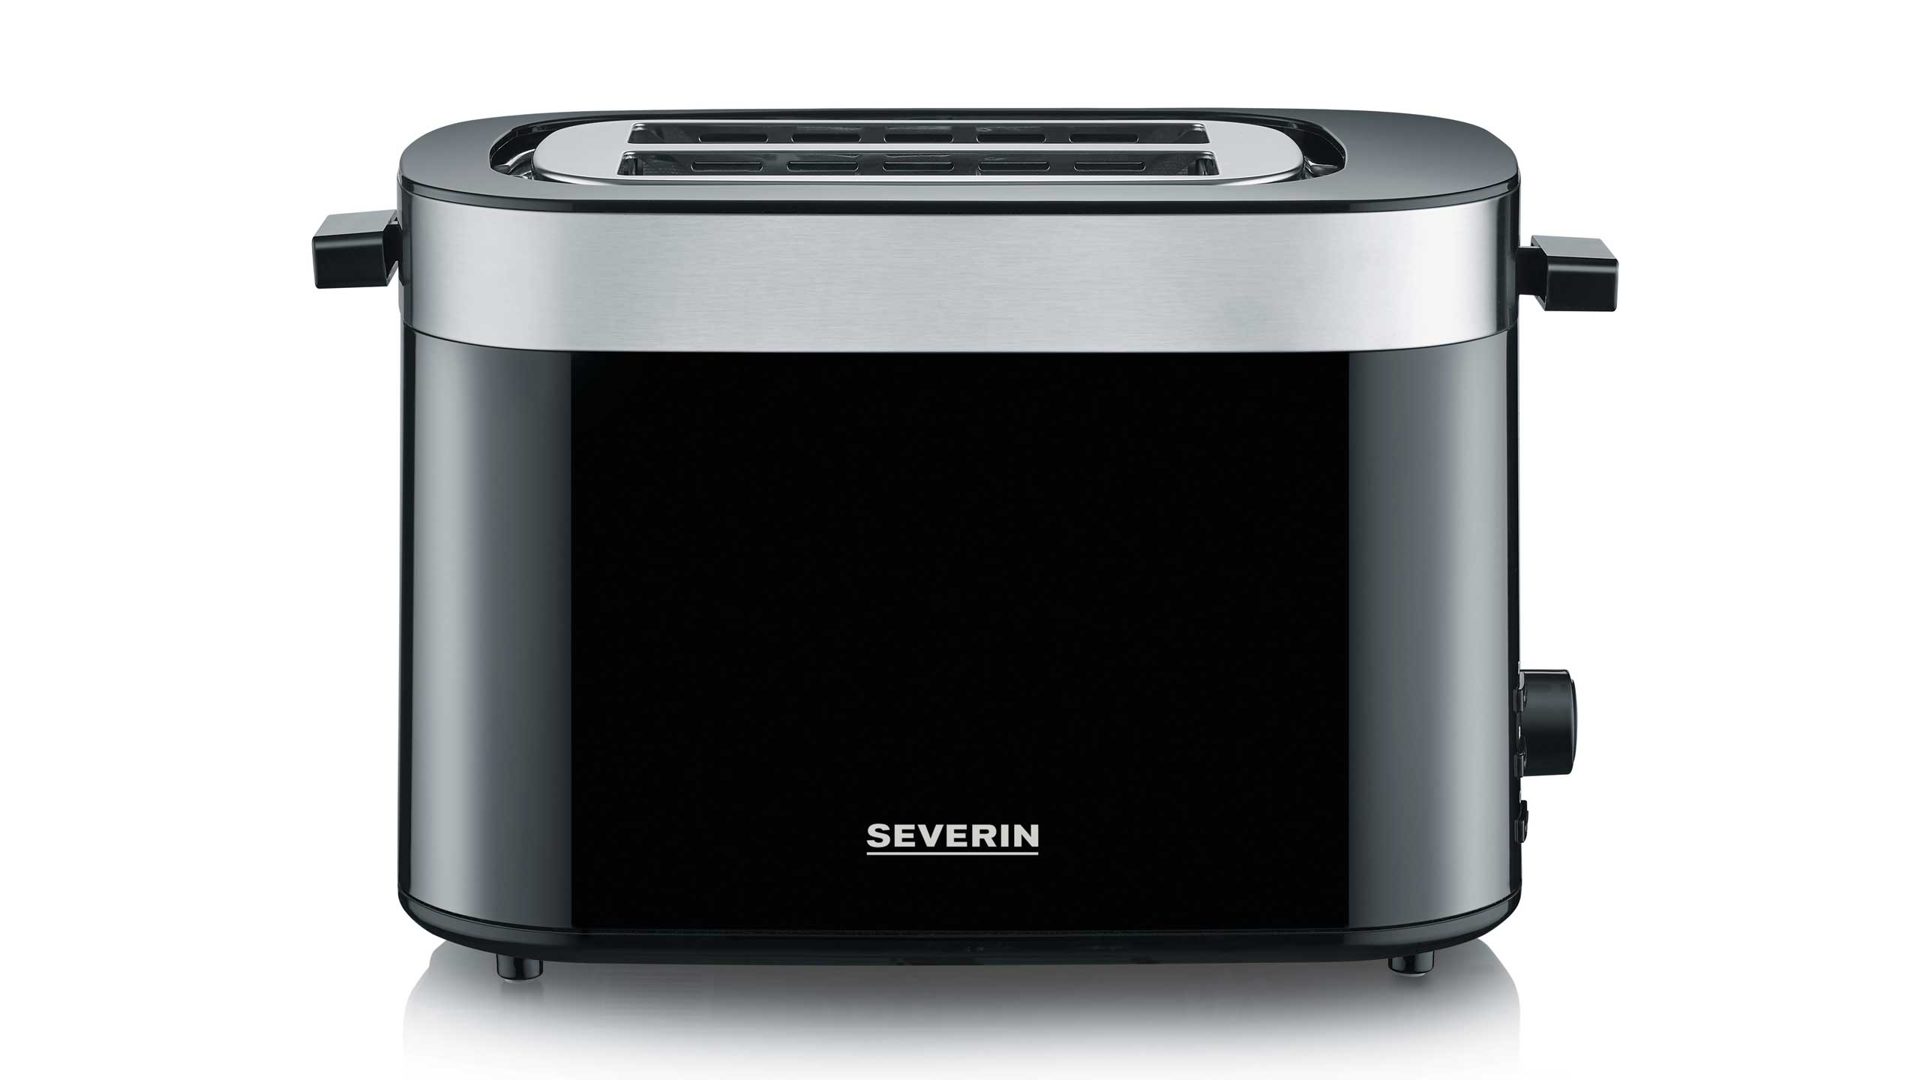 Toaster Severin aus Kunststoff Metall in Silber Schwarz SEVERIN Toaster AT9264 schwarz-Edelstahl gebürstet - 800 W, 2 Scheiben